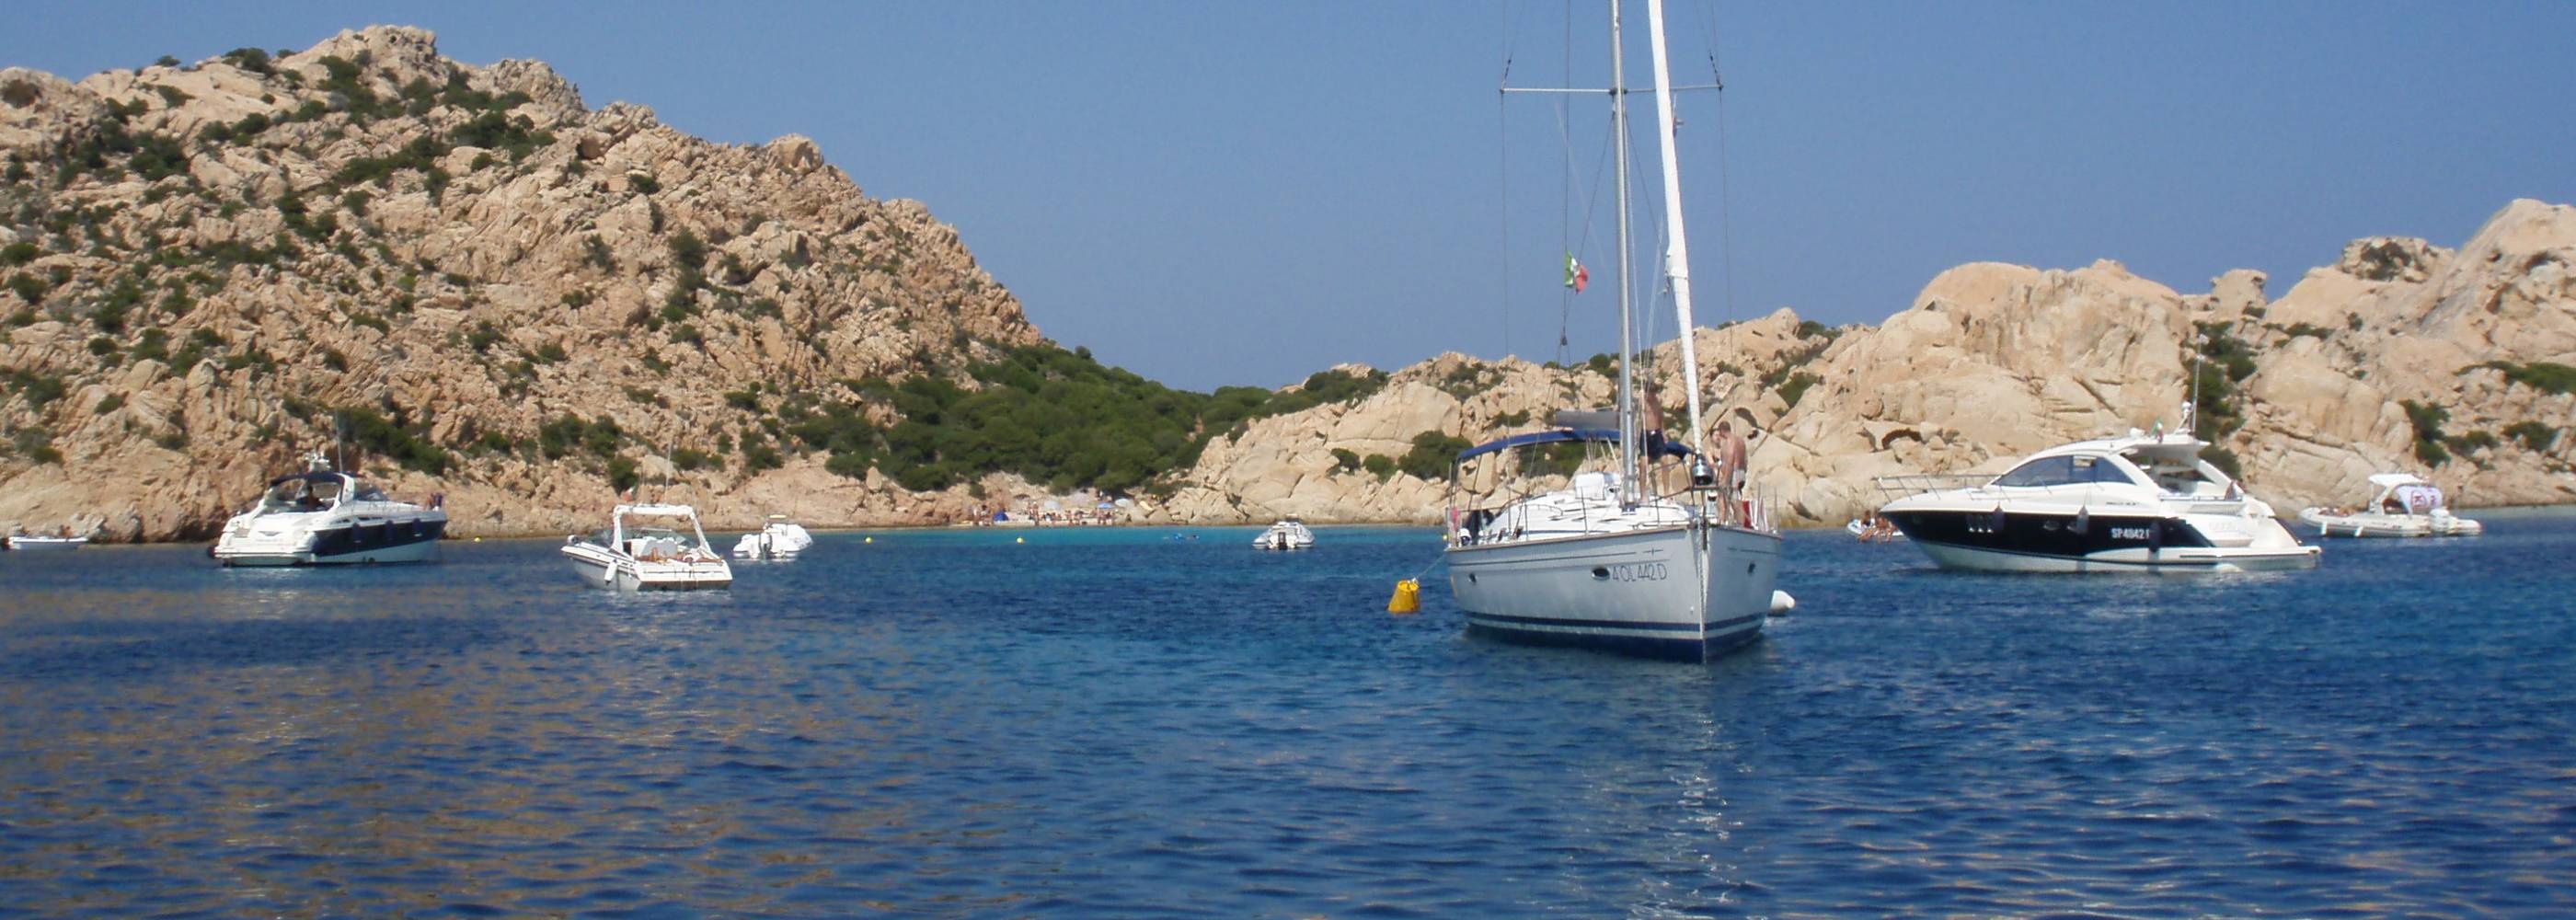 Aanbieding twee weekse flottielje Sardinie Corsica